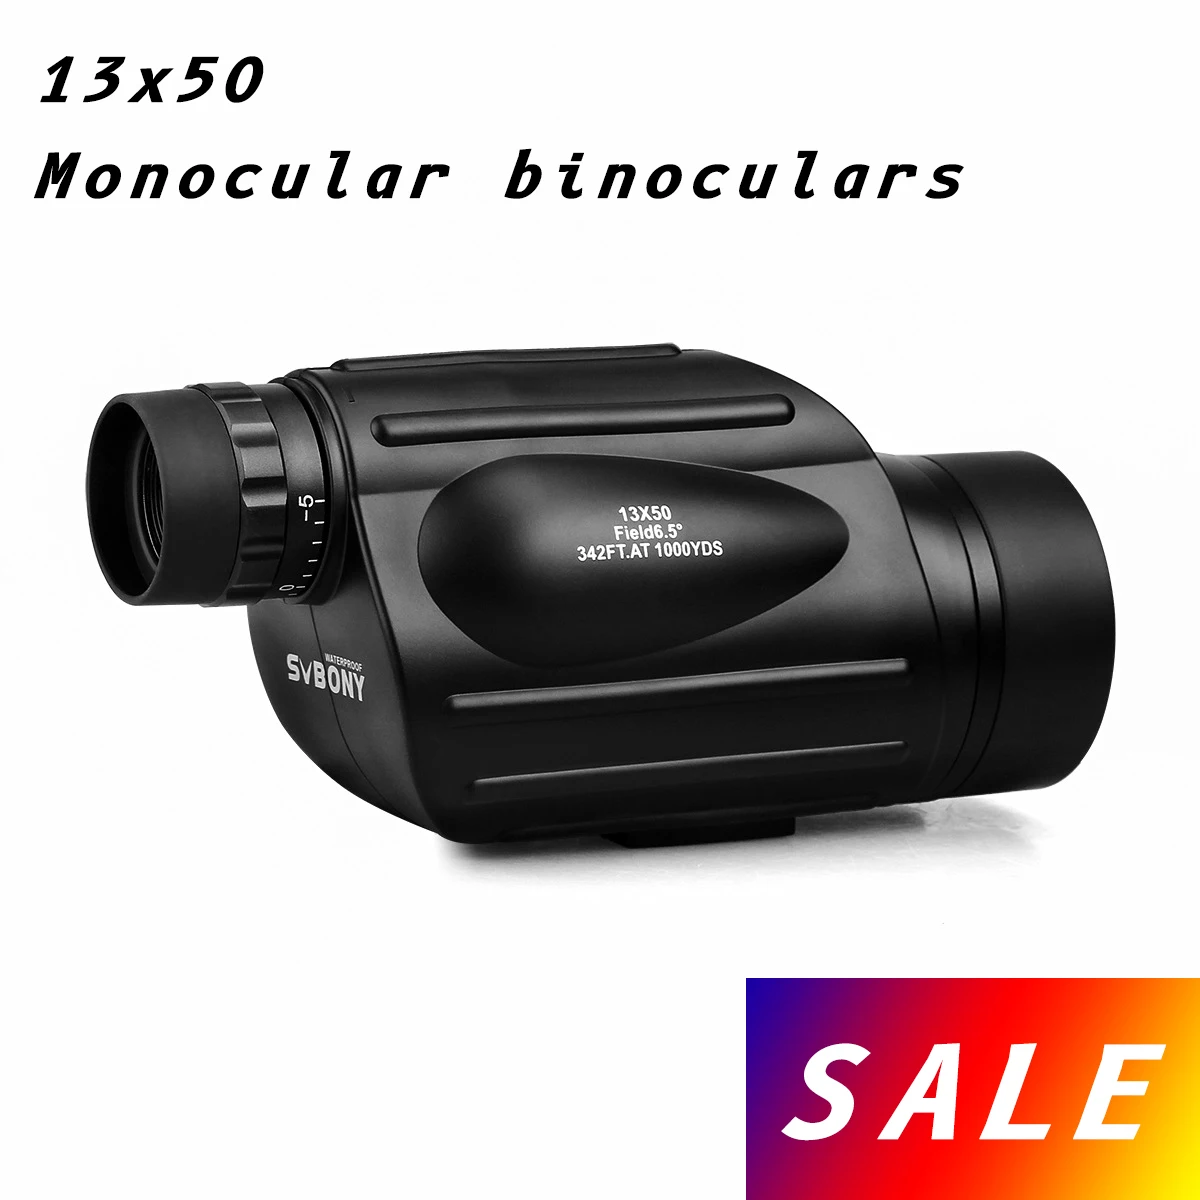 

Монокуляр SVBONY SV49 с 13x50 зумом, мощный телескоп ночного видения, военный, охотничий, туризм, профессиональный оптический объектив Spyglass